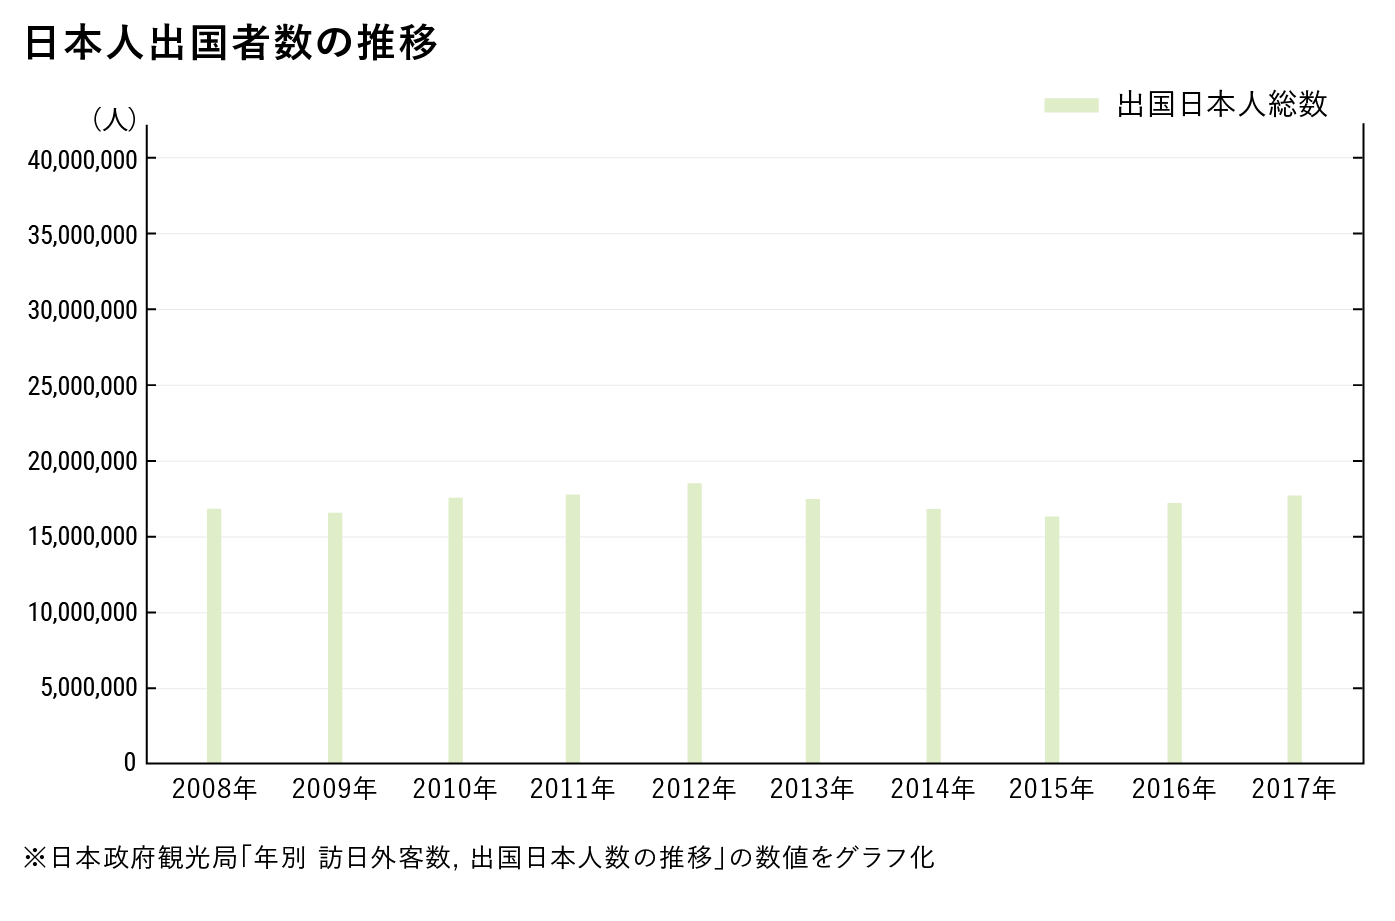 日本人出国者数の推移